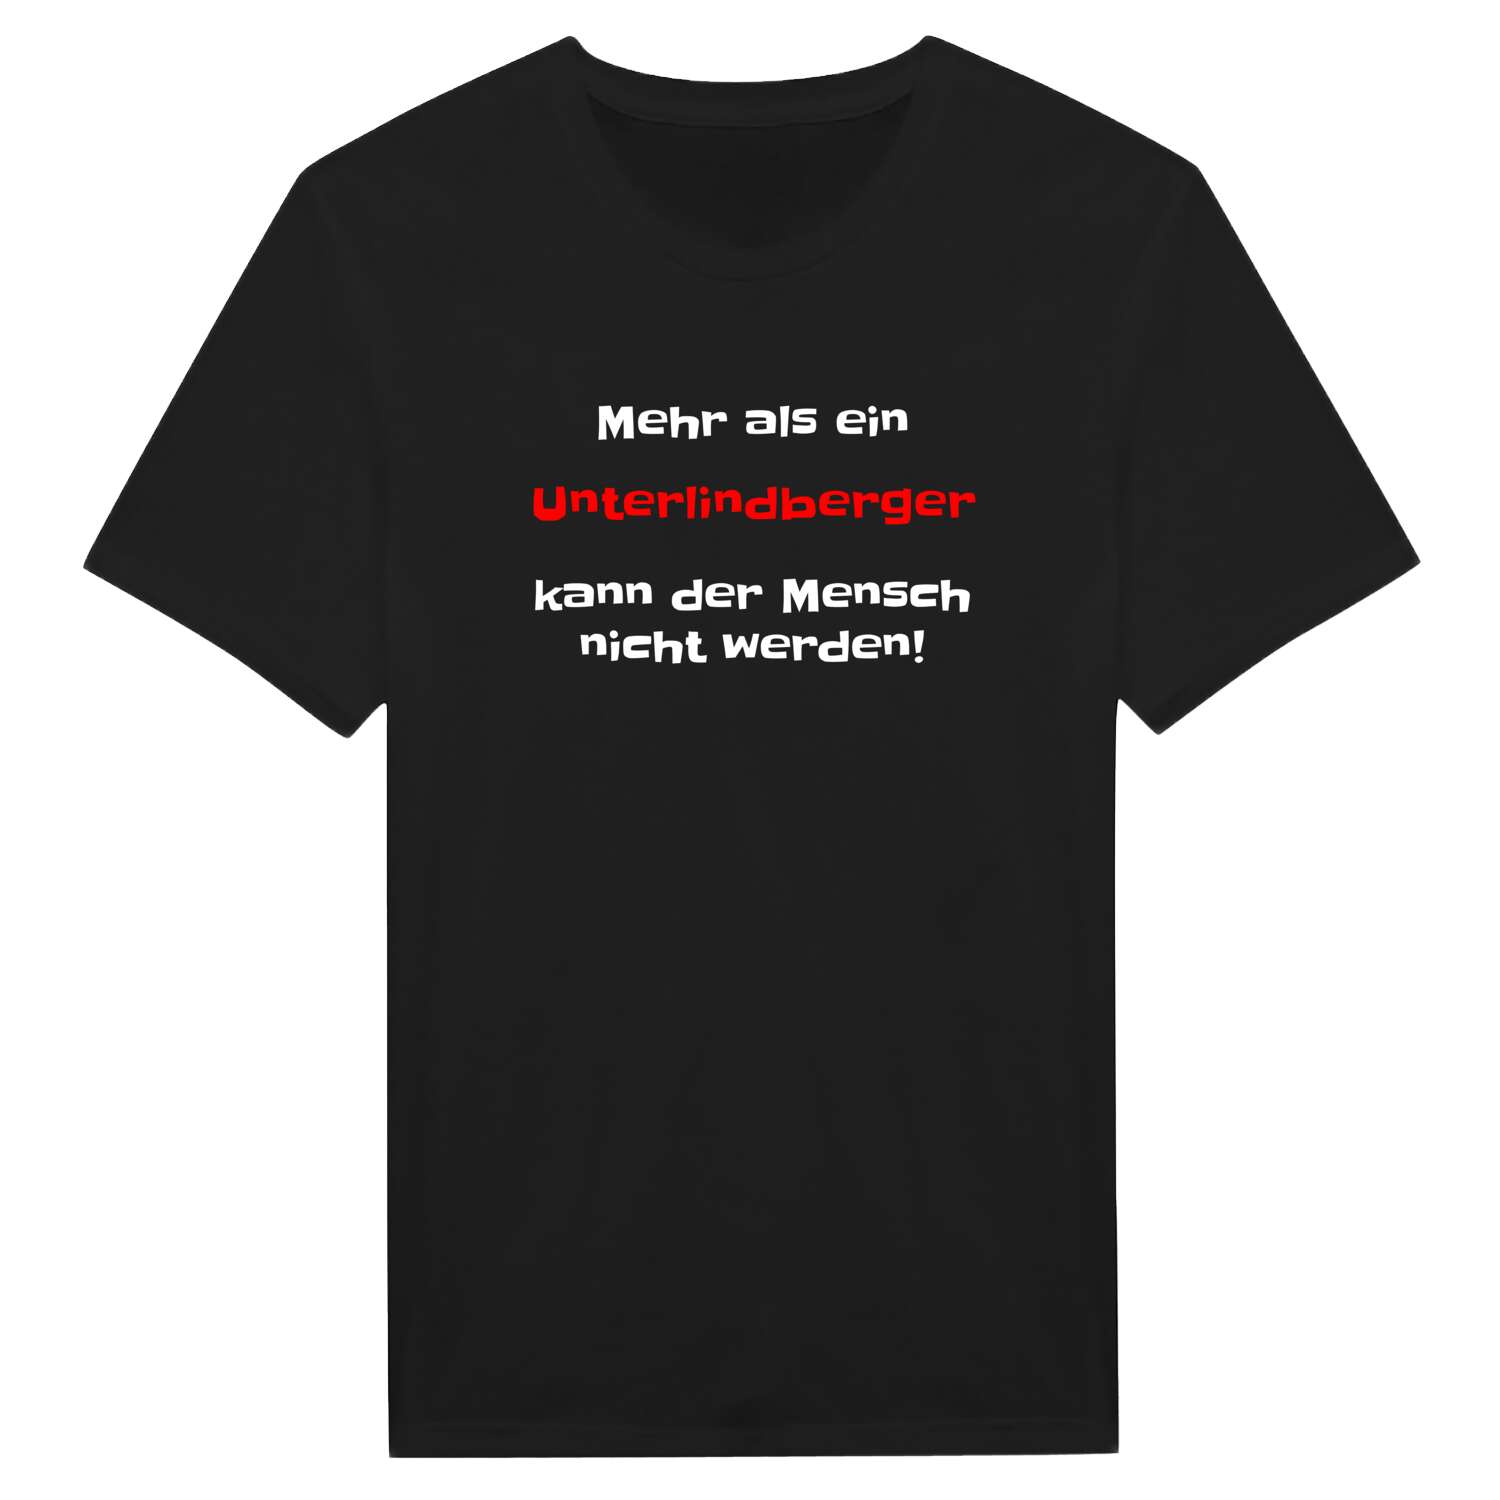 Unterlindberg T-Shirt »Mehr als ein«